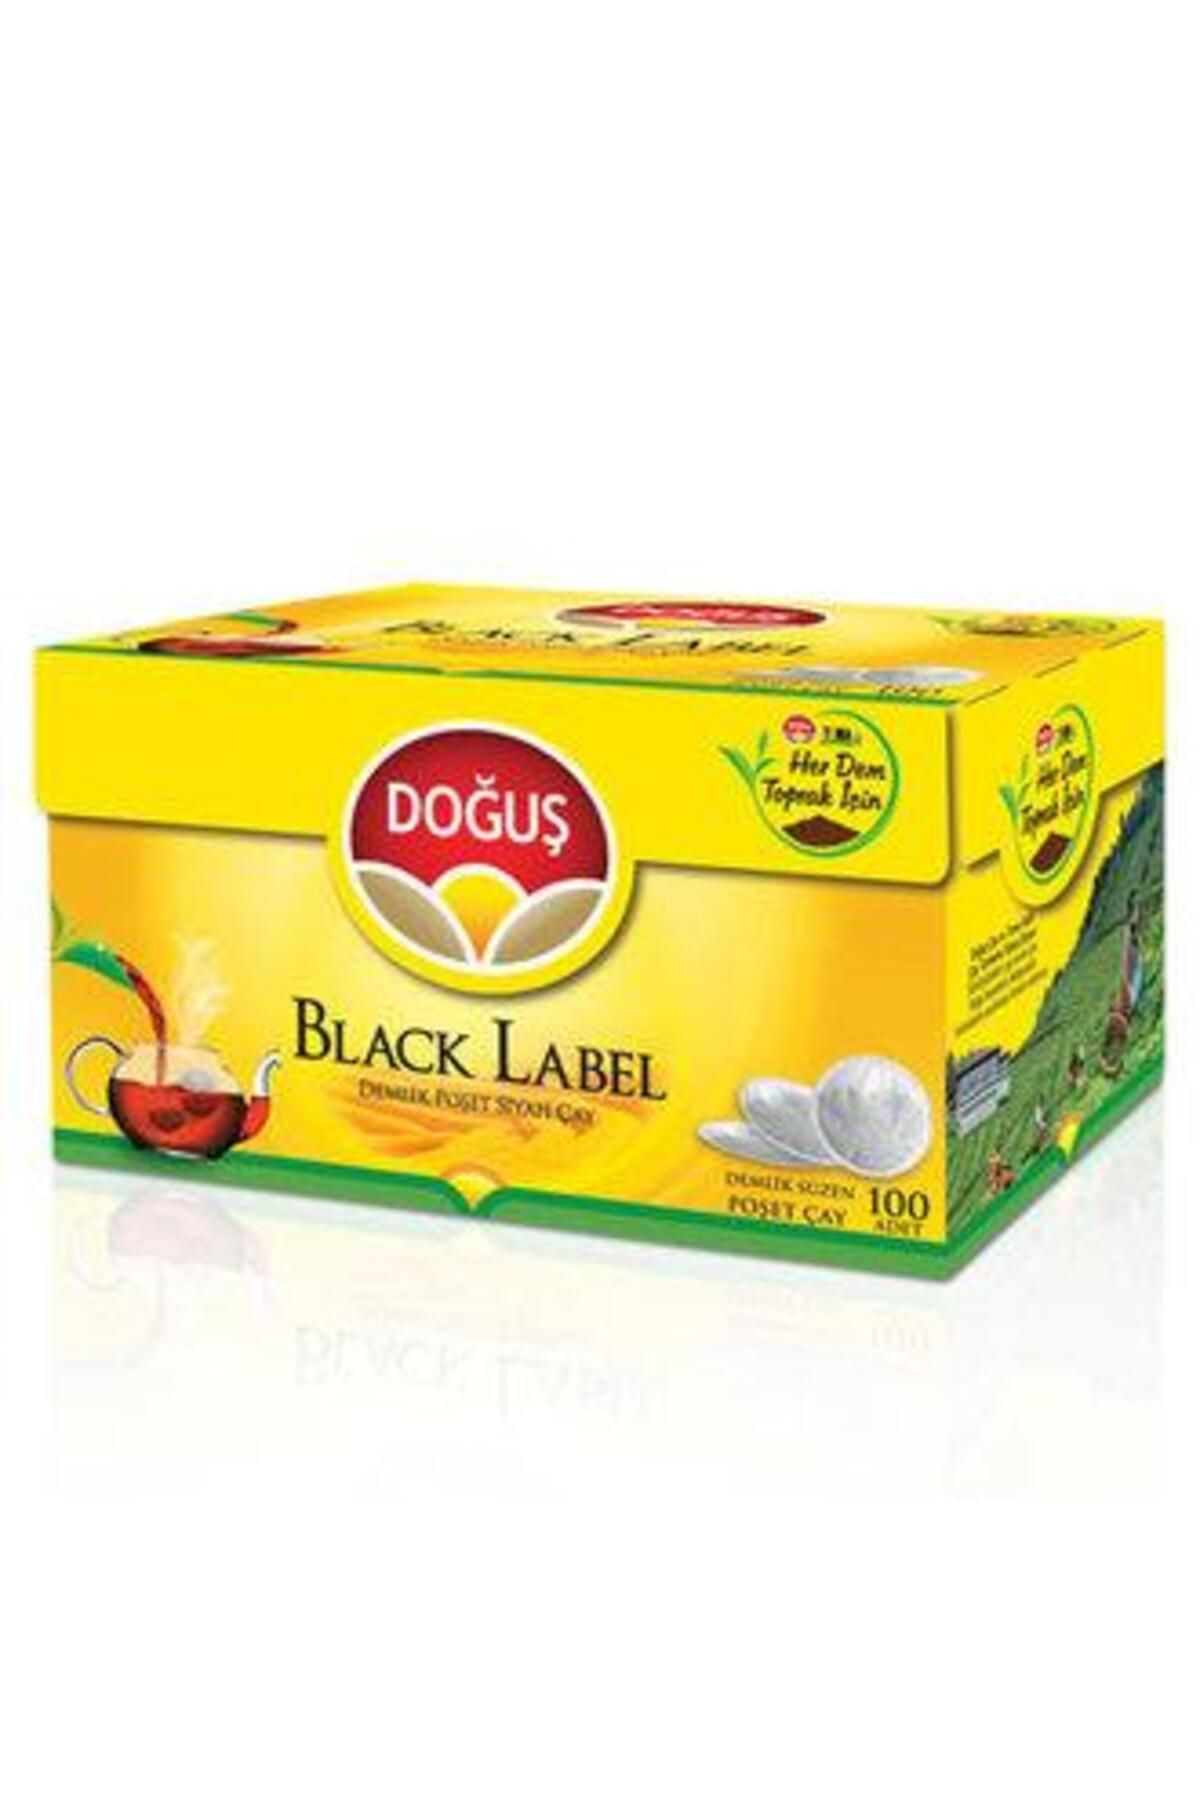 Doğuş Çay Doğuş Black Label Demlik 100'lü 320 Gr. (24'LÜ)